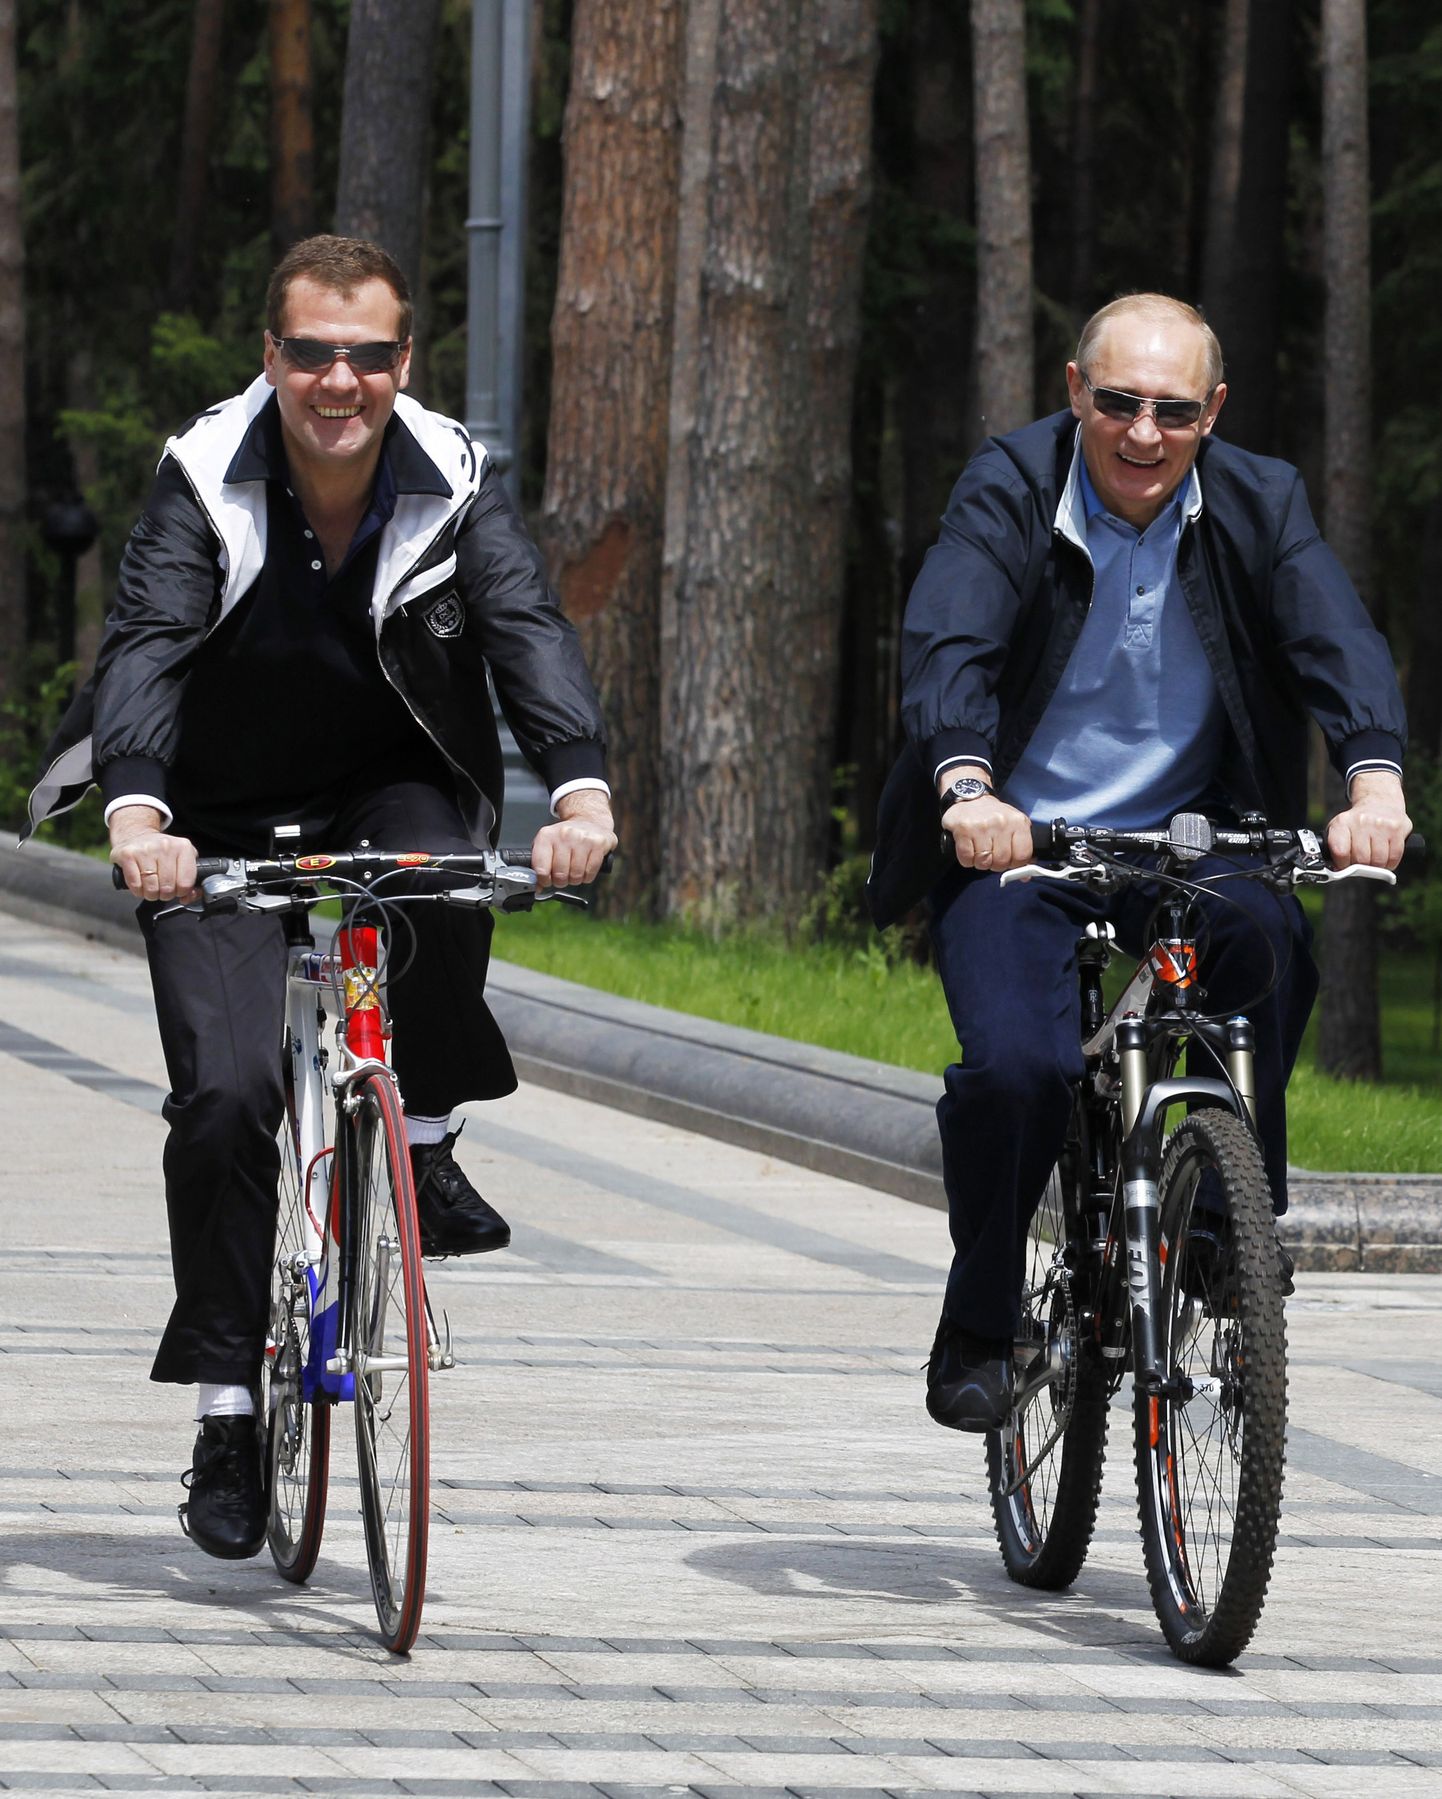 Venemaa presidemt Dmitri Medvedev (vasakul) ja peaminister Vladimir Putin juunis 2011 sõitmas Moskva Gorki pargis jalgratastega